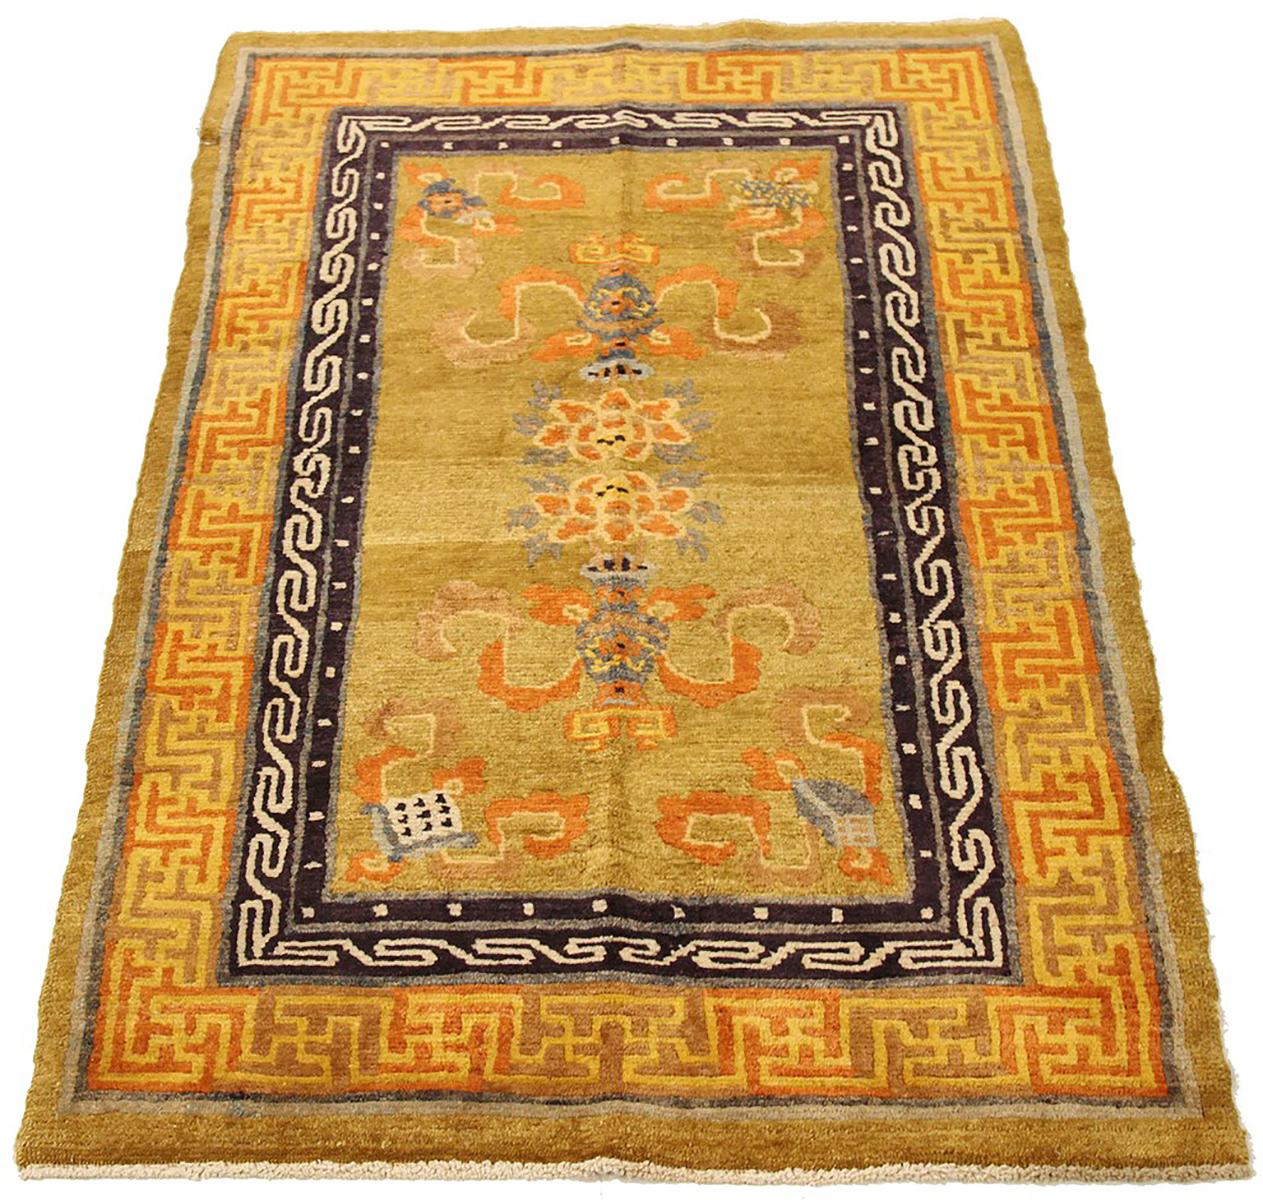 Antiker nepalesischer Teppich, handgewebt aus feinster Schafswolle und gefärbt mit natürlichen Pflanzenfarben, die für Menschen und Haustiere unbedenklich sind. Es handelt sich um ein traditionelles nepalesisches, modernes Design mit floralen und